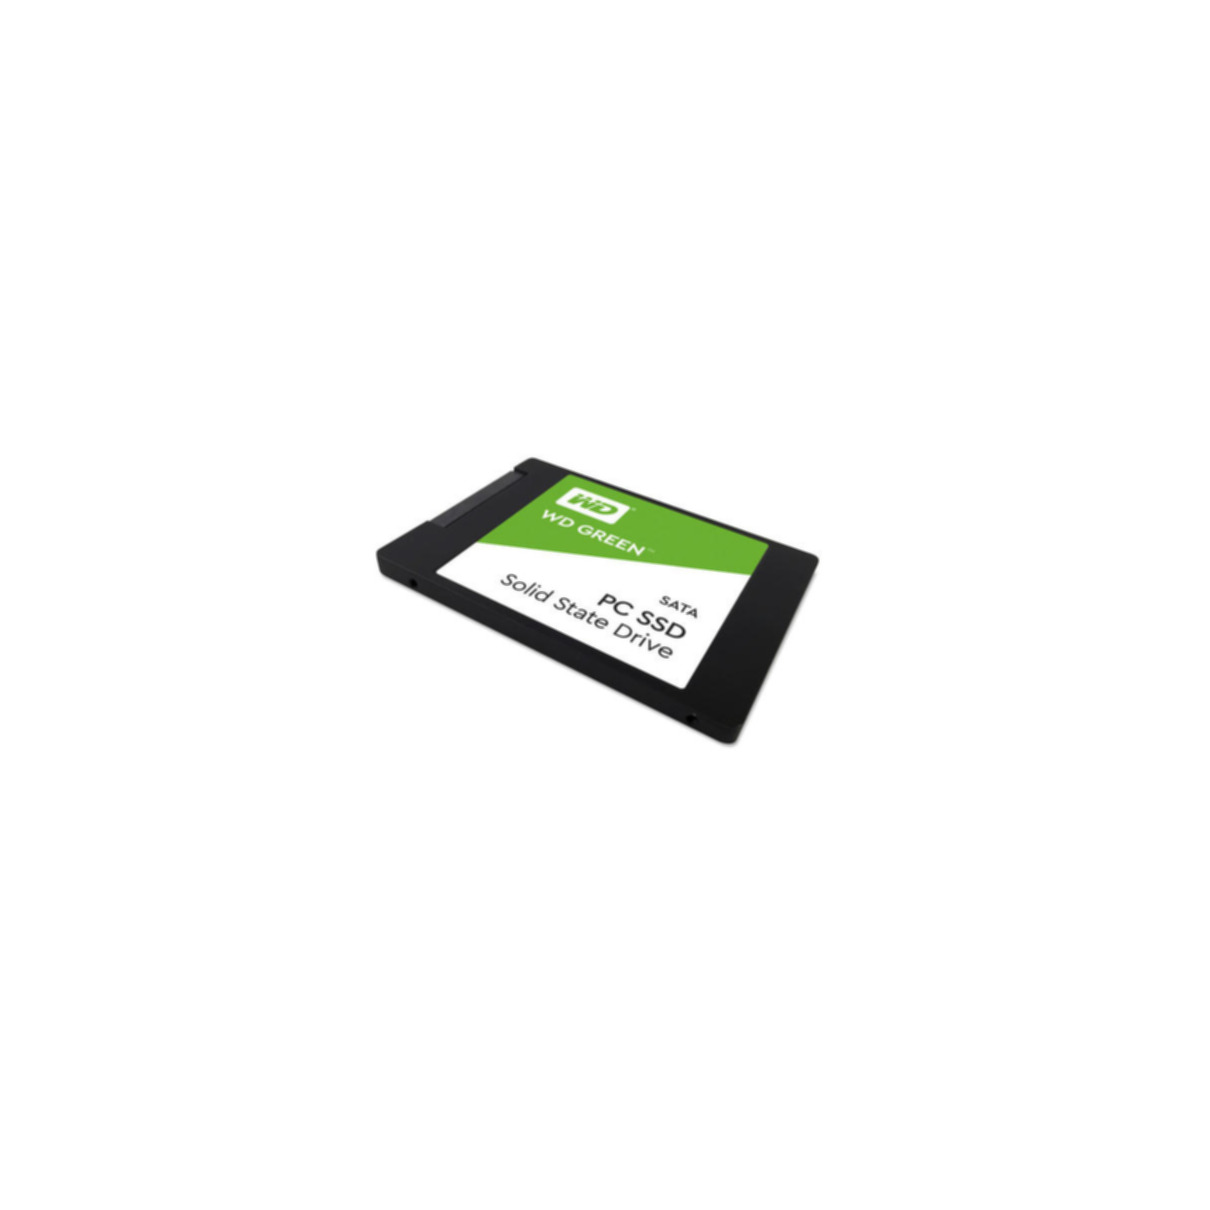 Green, intern WESTERN Zoll, GB, DIGITAL 240 2,5 SSD,